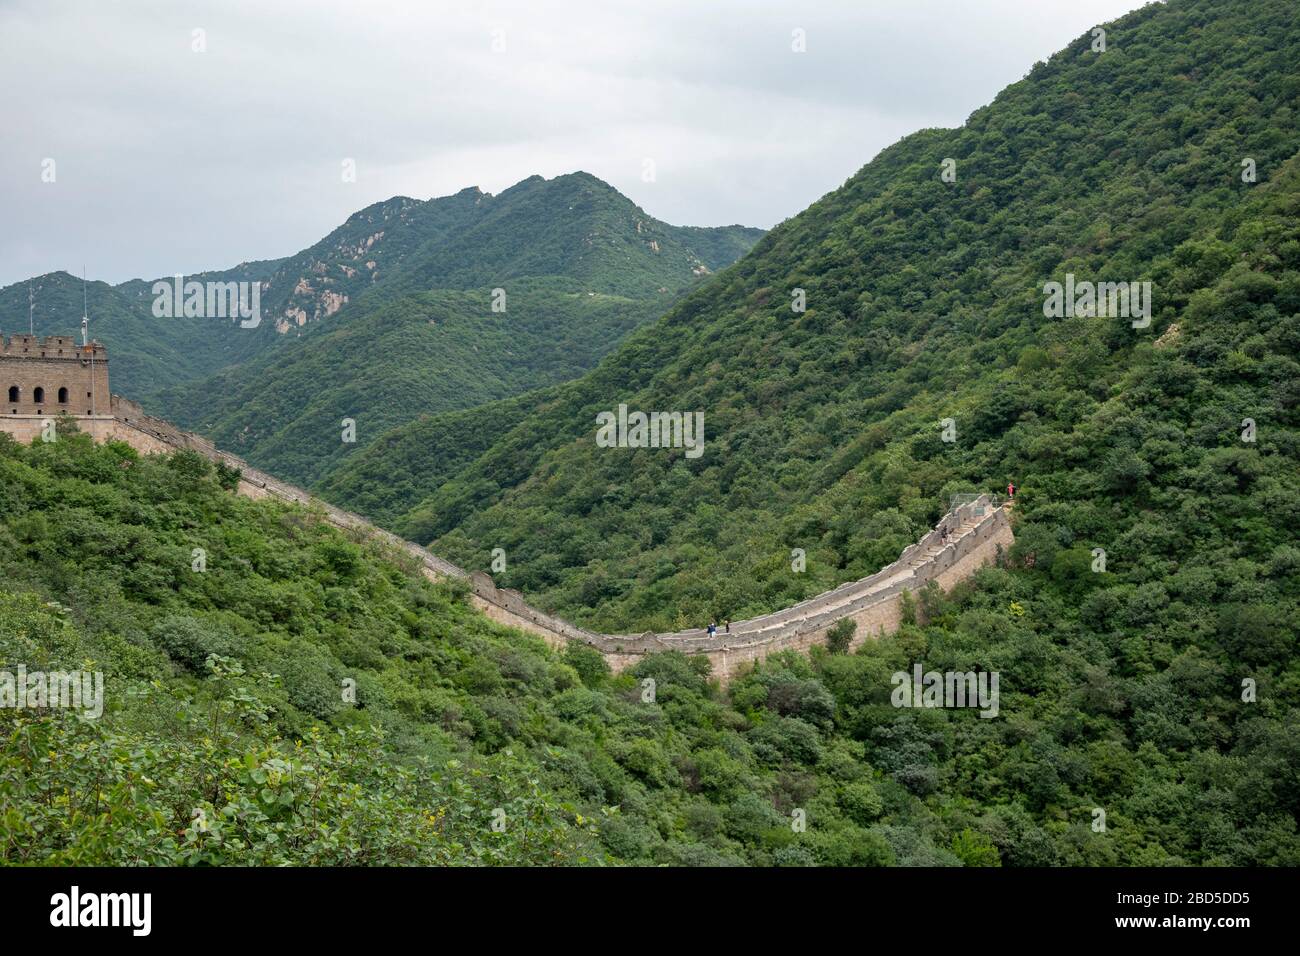 Abruptes Ende eines restaurierten Teils der chinesischen Mauer, Yanqing District, in der Nähe von Peking, China Stockfoto